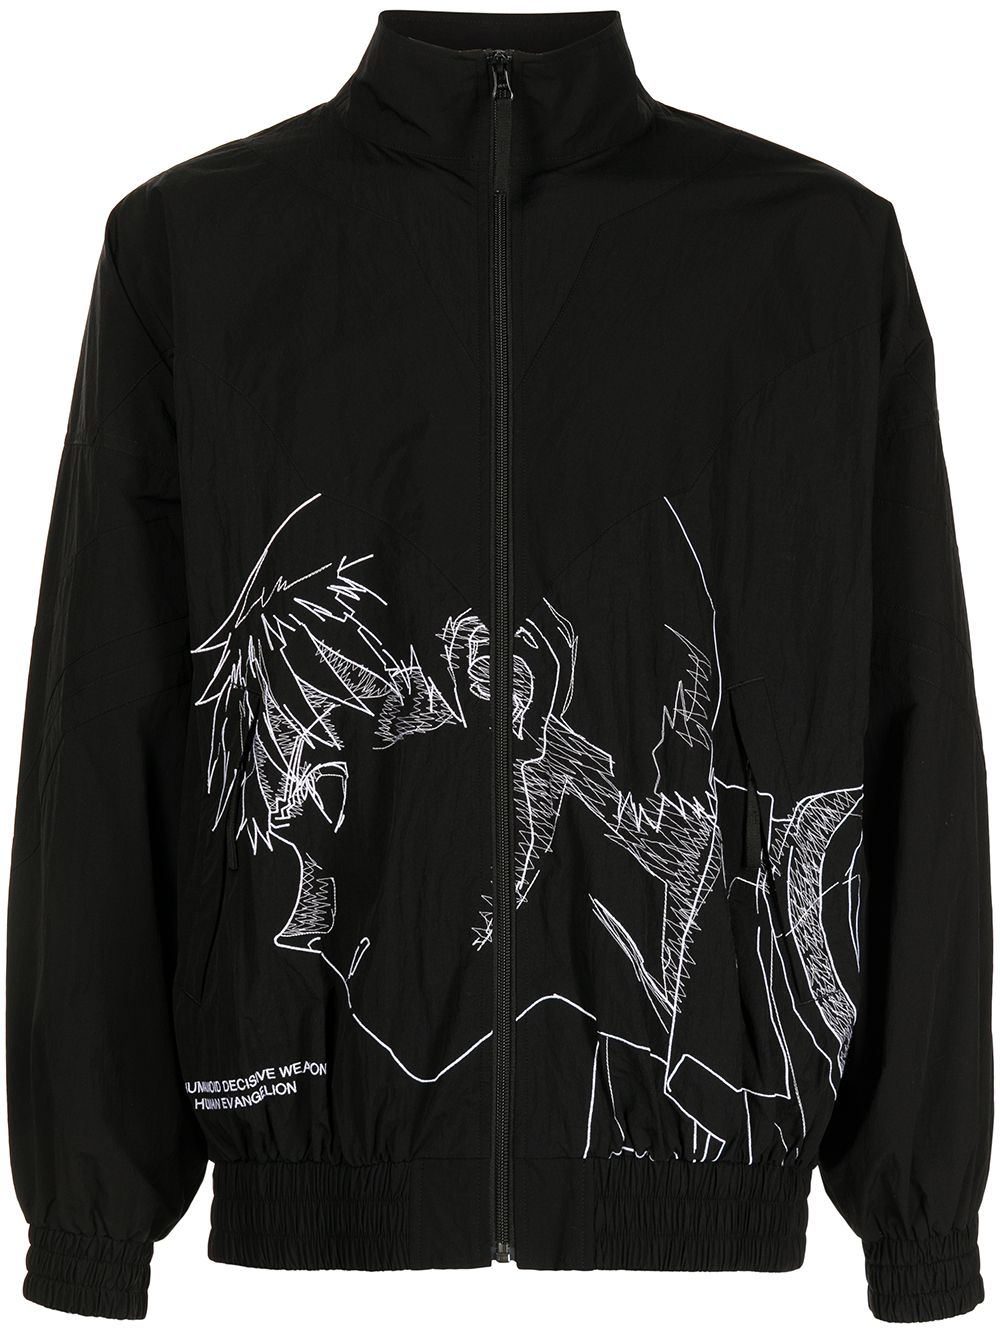 Undercover x Neon Genesis Evangelion Embroidered Shell Track Jacket - Black von Undercover